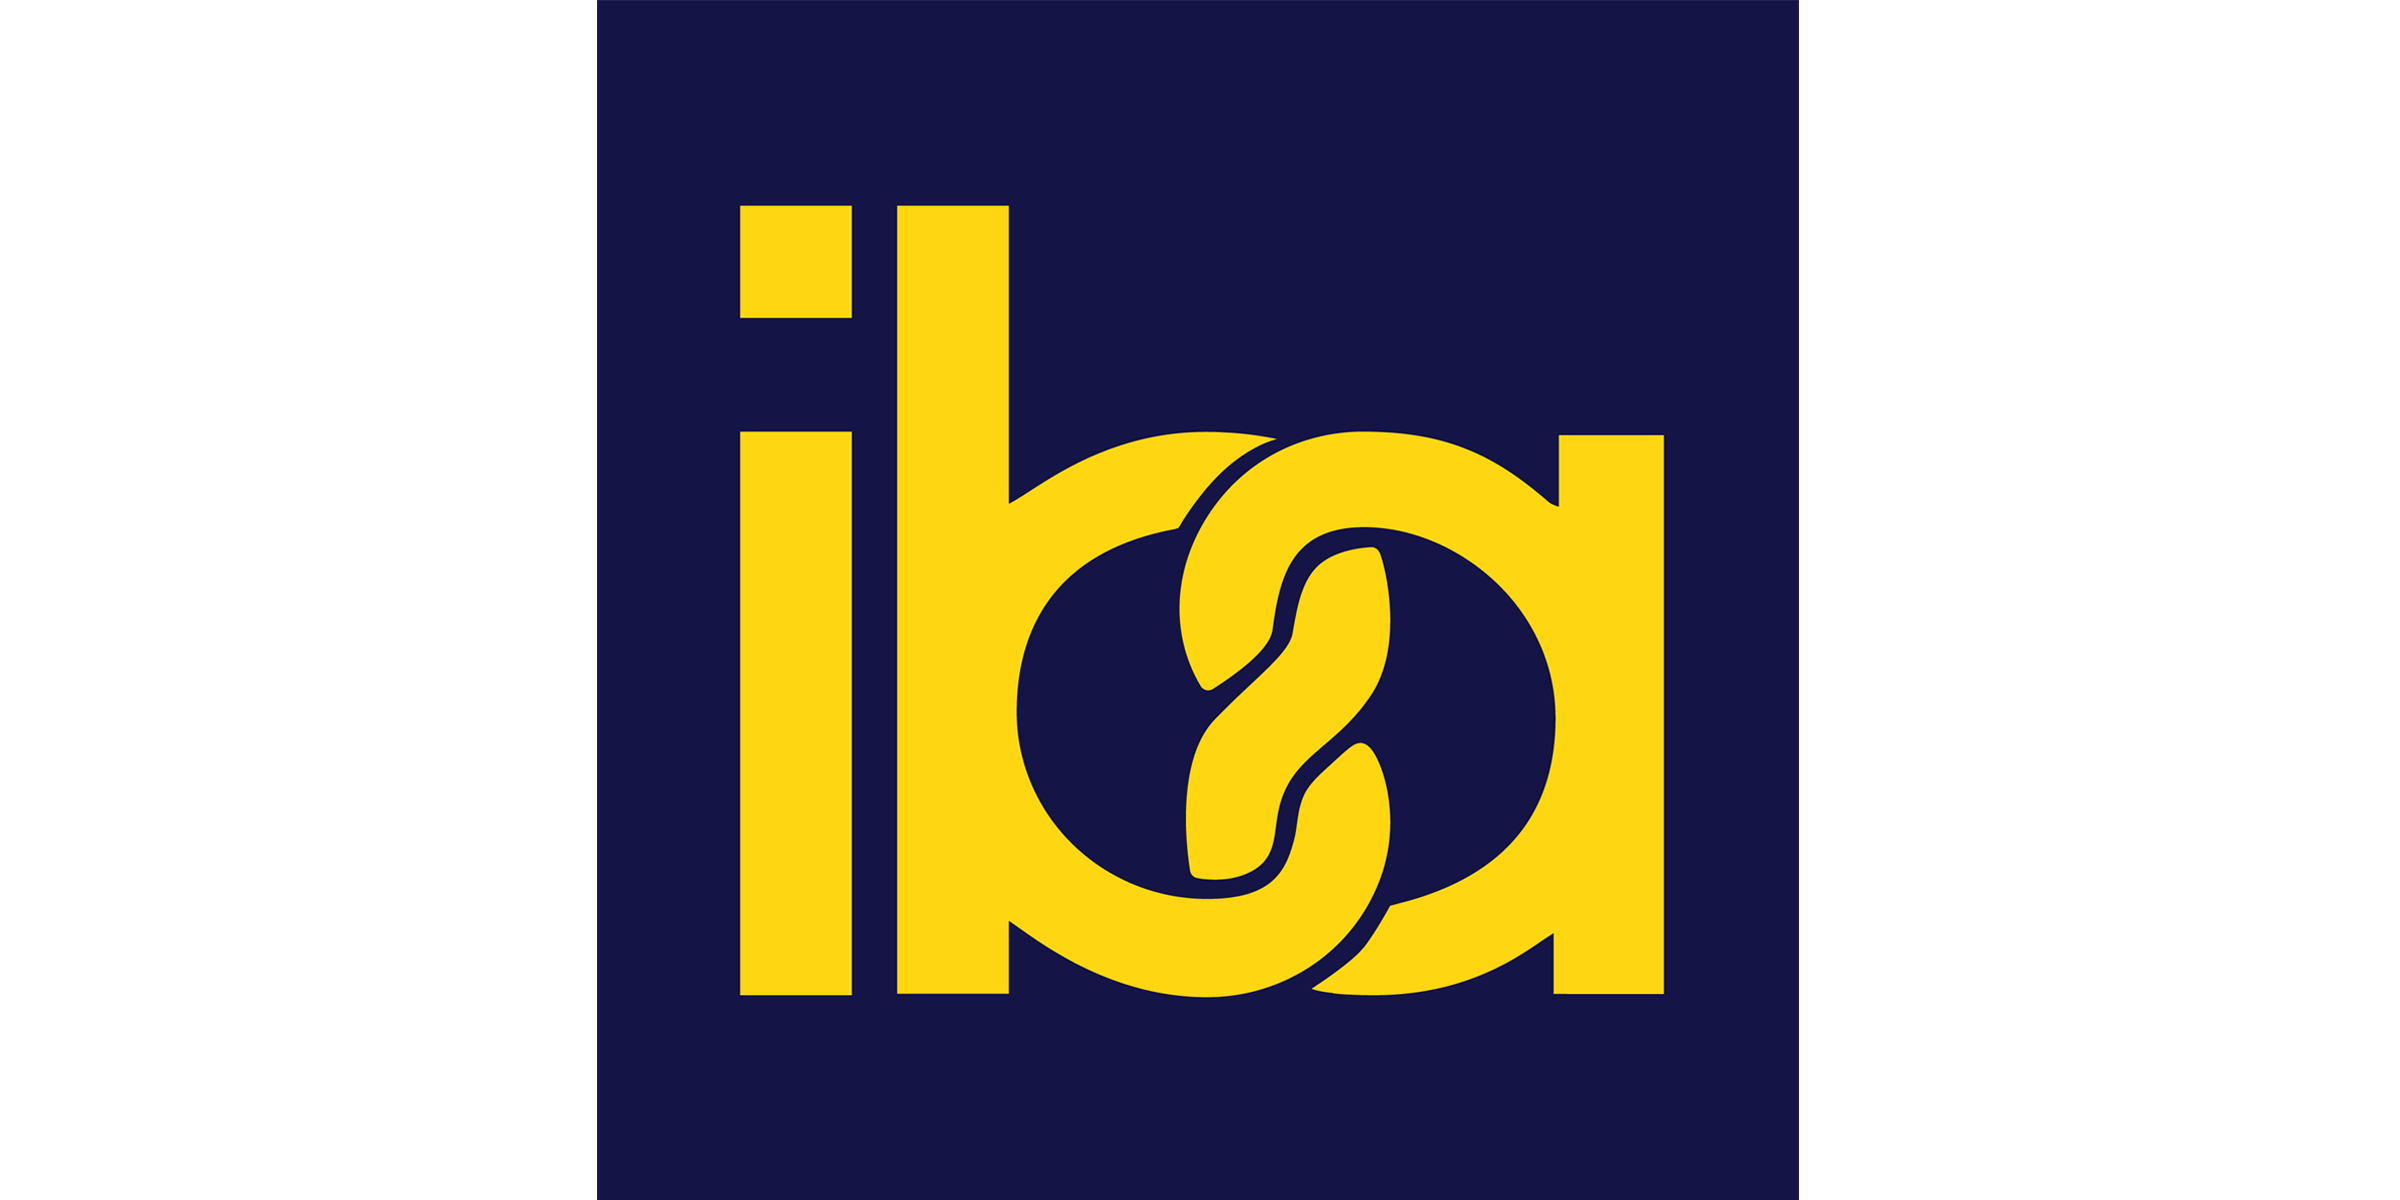 慕尼黑国际烘焙技术博览会IBA 2021